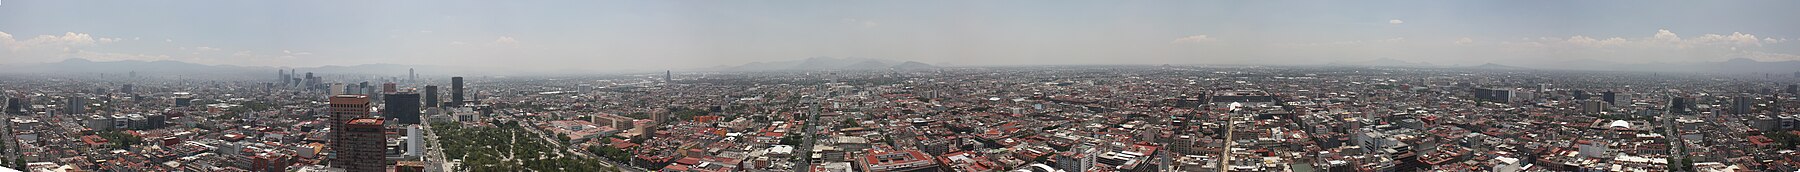 Panorama van Mexico-Stad vanaf de Torre Latinoamericana, mei 2014